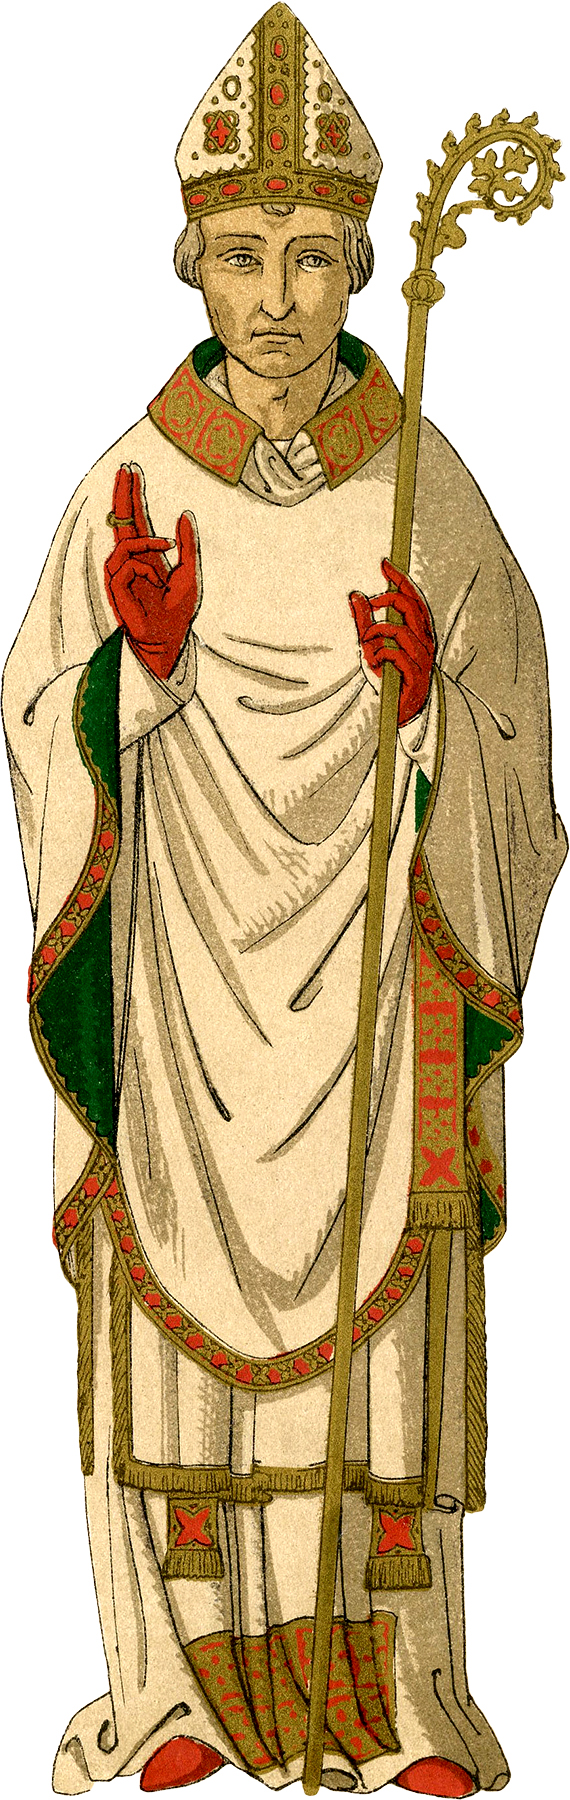 English Bishop Costume Image